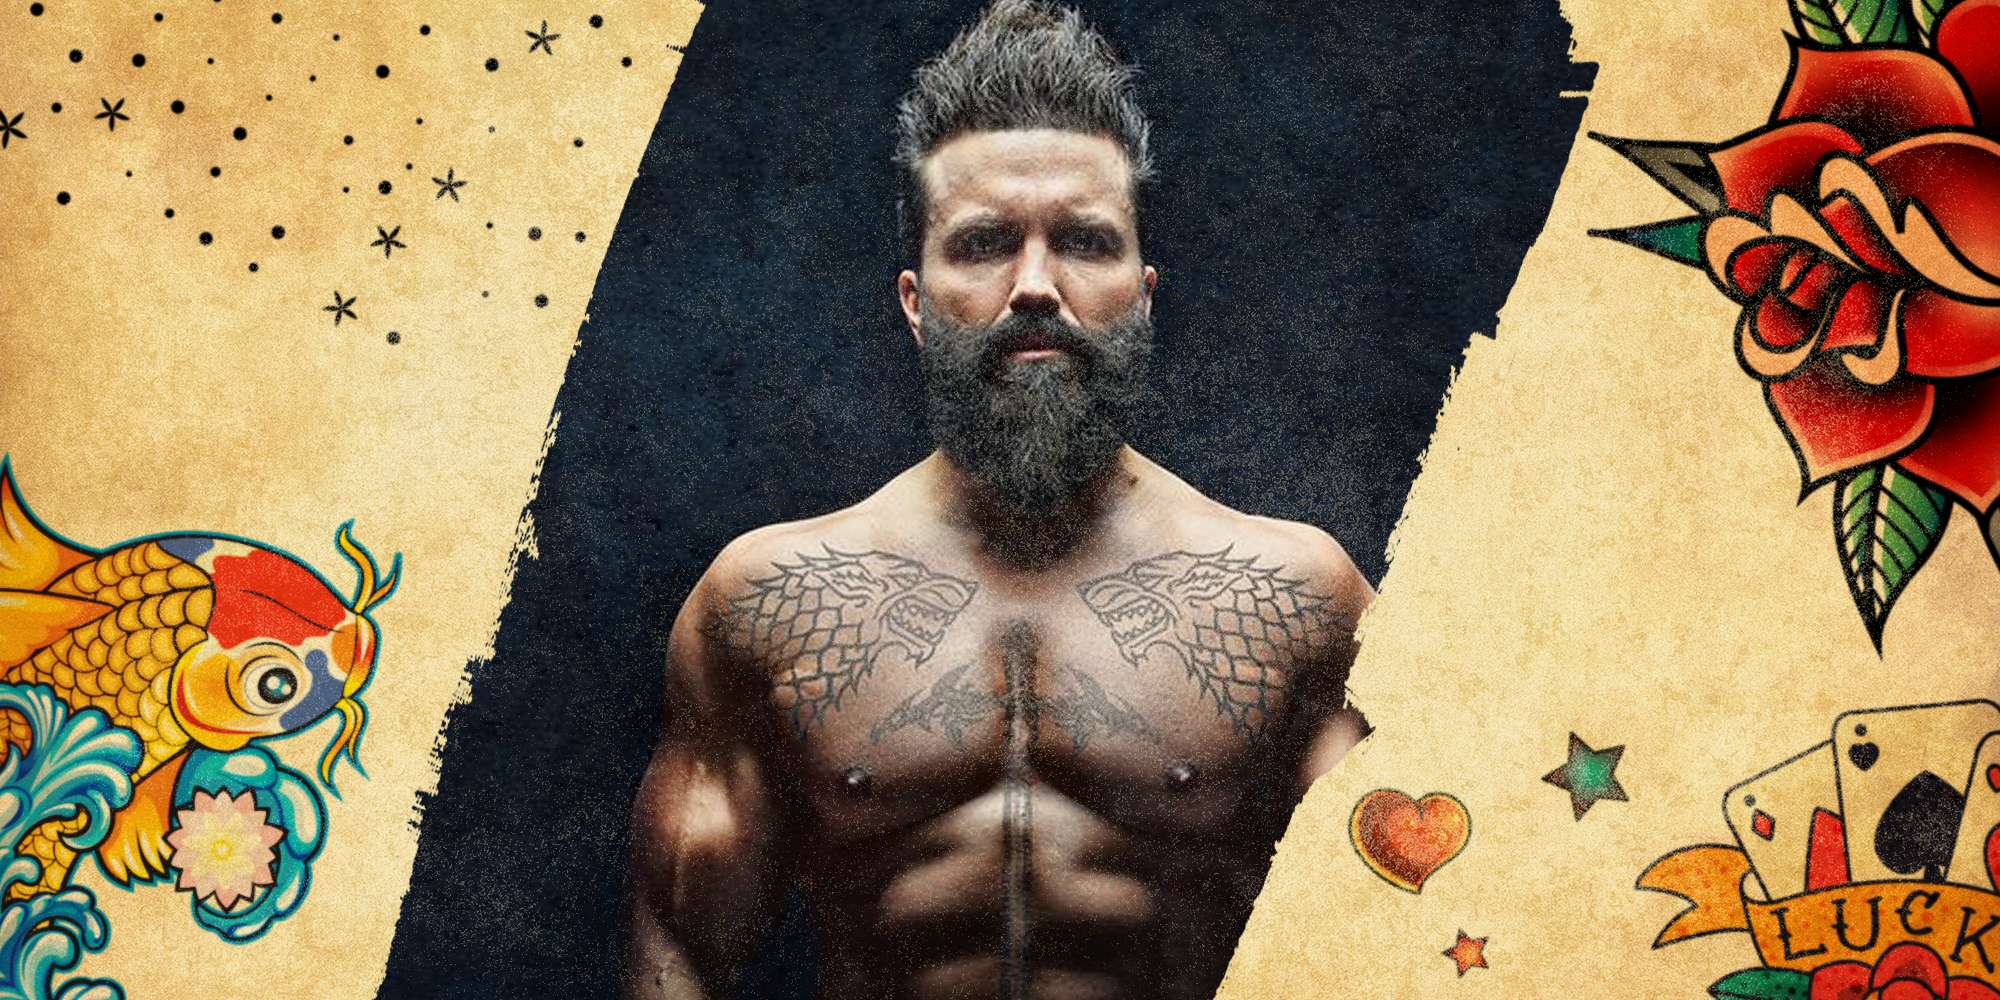 50 Artsy Tattoos For Men  Artistic Ink Design Ideas